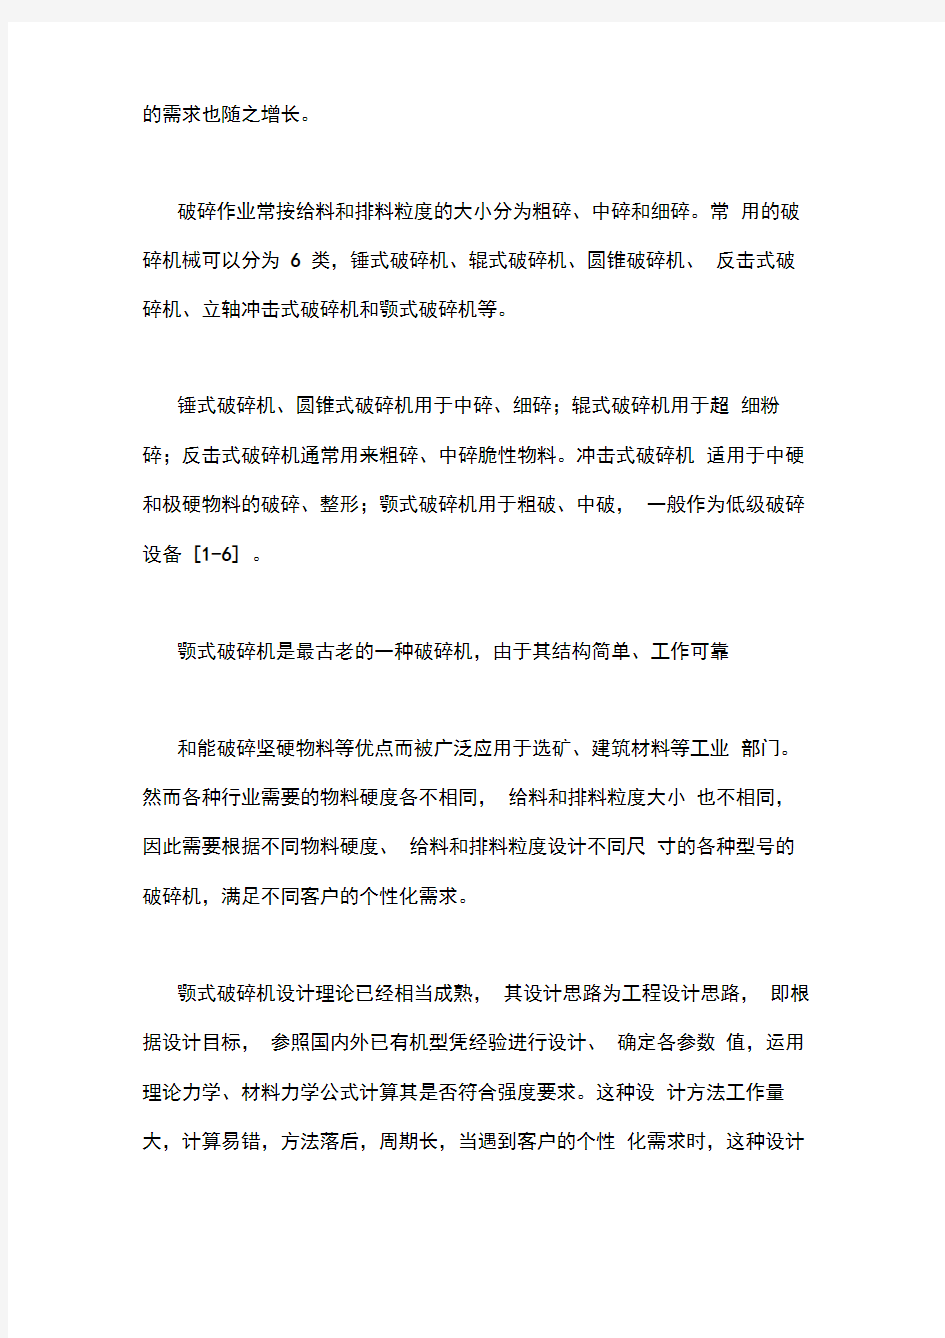 上海海洋大学开题报告